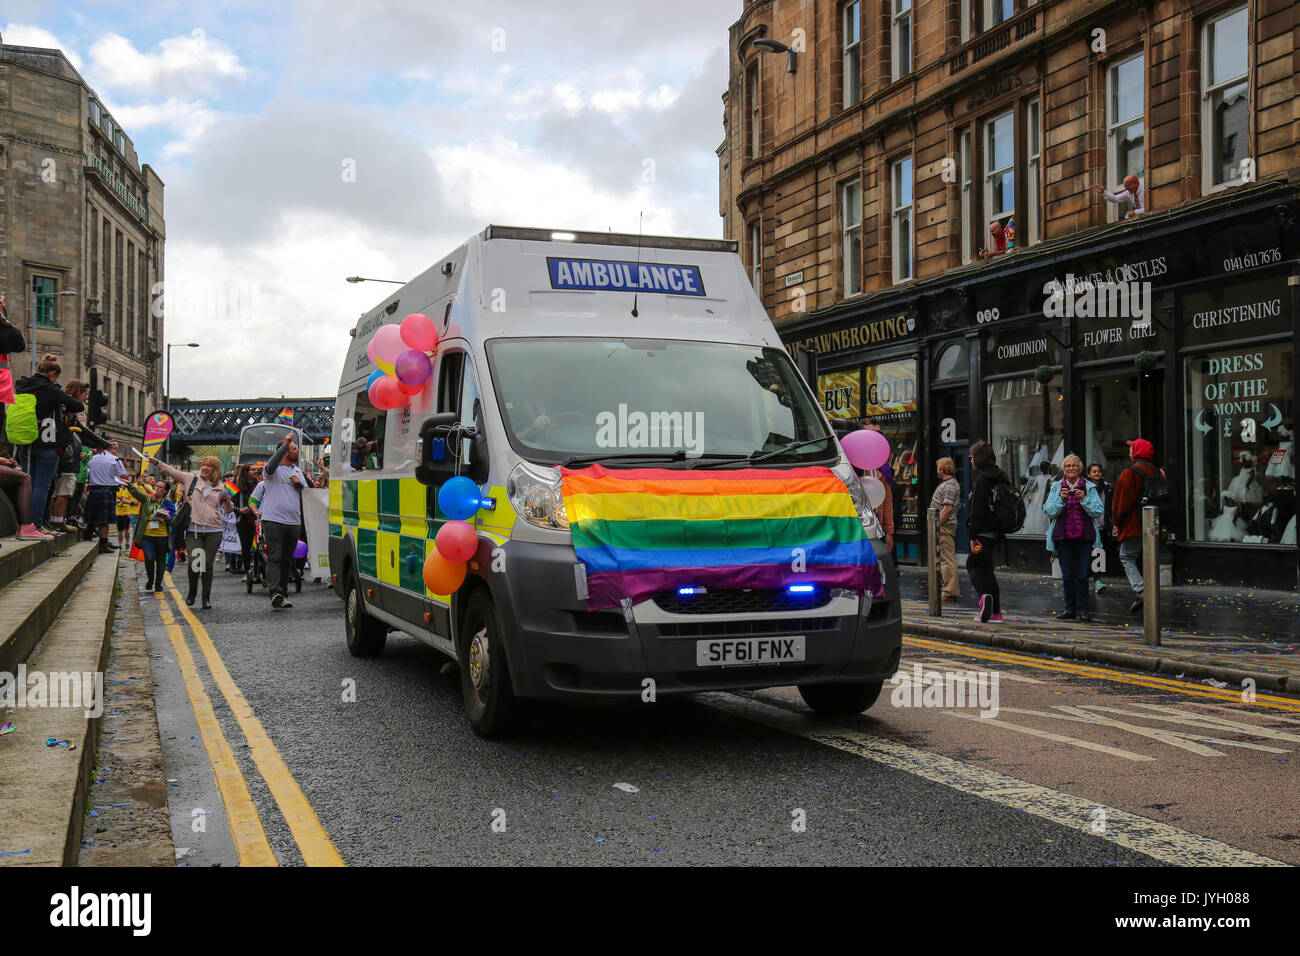 Des milliers dans la rue dans la parade de la Gay Pride à travers le cœur du centre-ville de Glasgow. Des centaines d'entreprises et des groupes sociaux montrent leur soutien pour les droits LGBT à l'événement. Banque D'Images